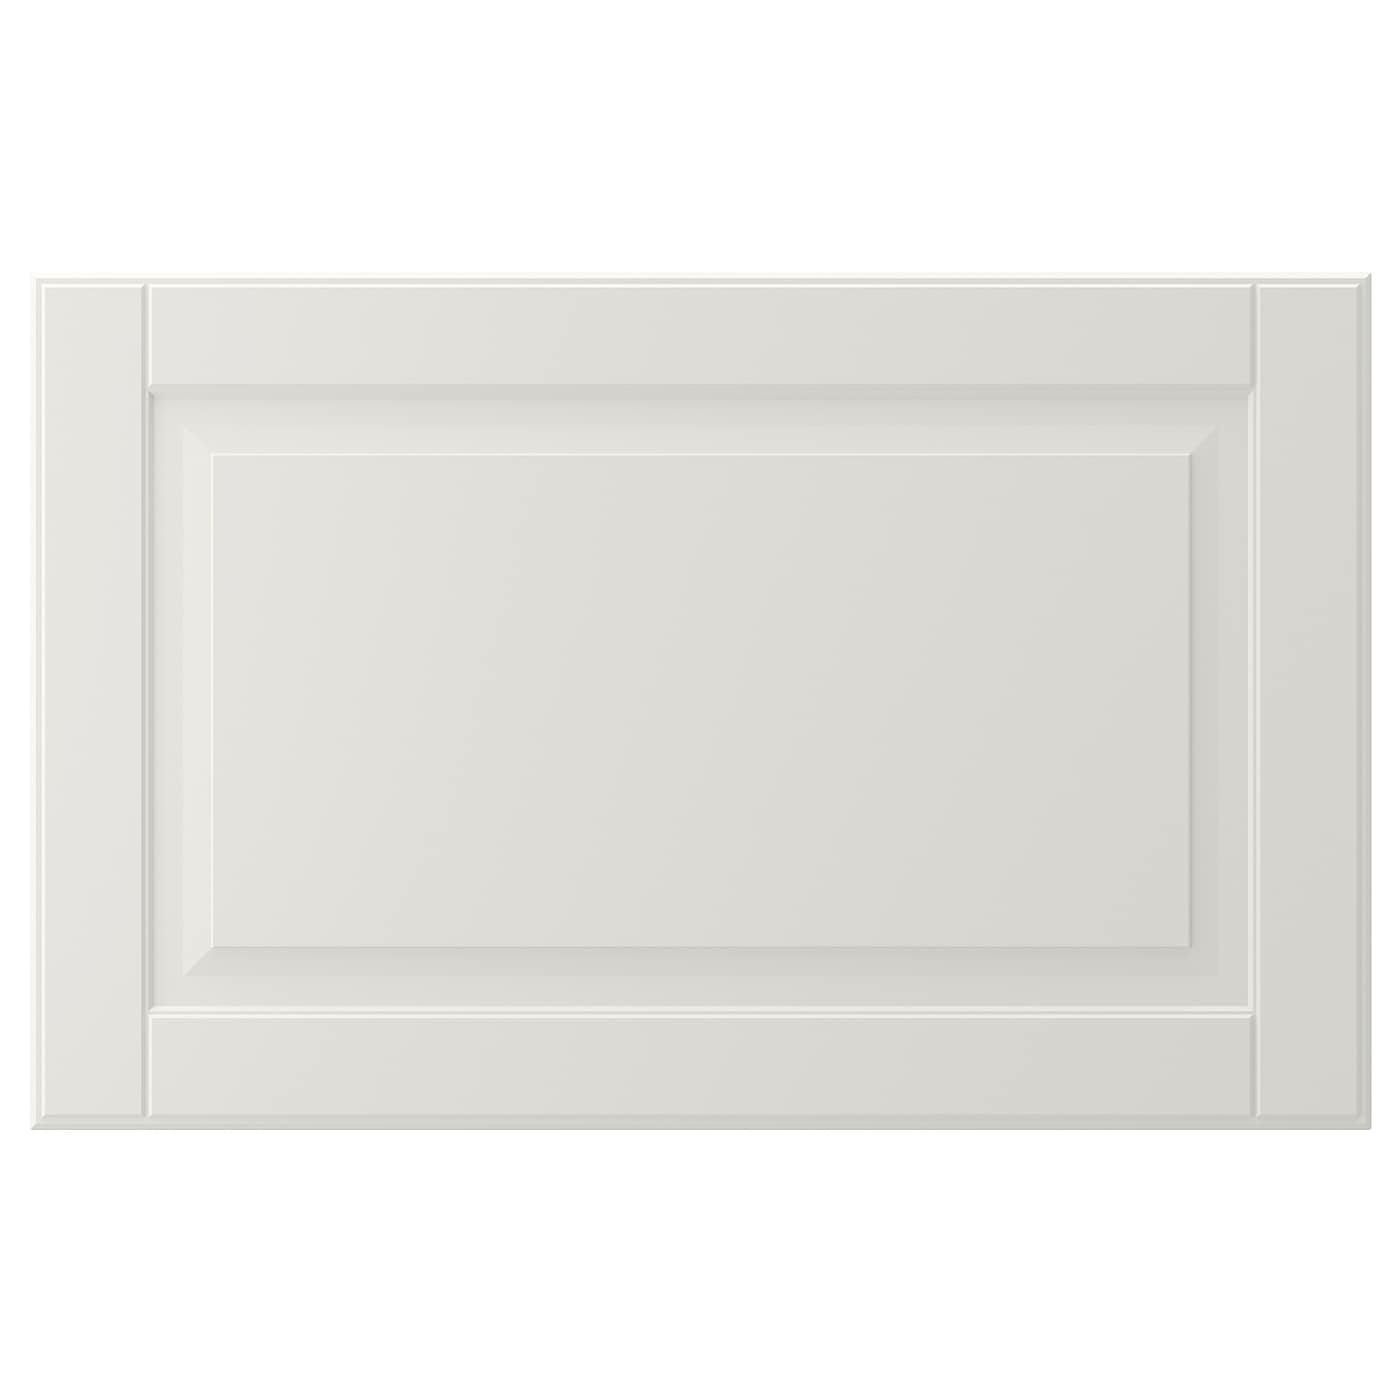 Дверца - SMEVIKEN   IKEA/ СМЕВИКЕН ИКЕА,  60x38 см, светло-серый